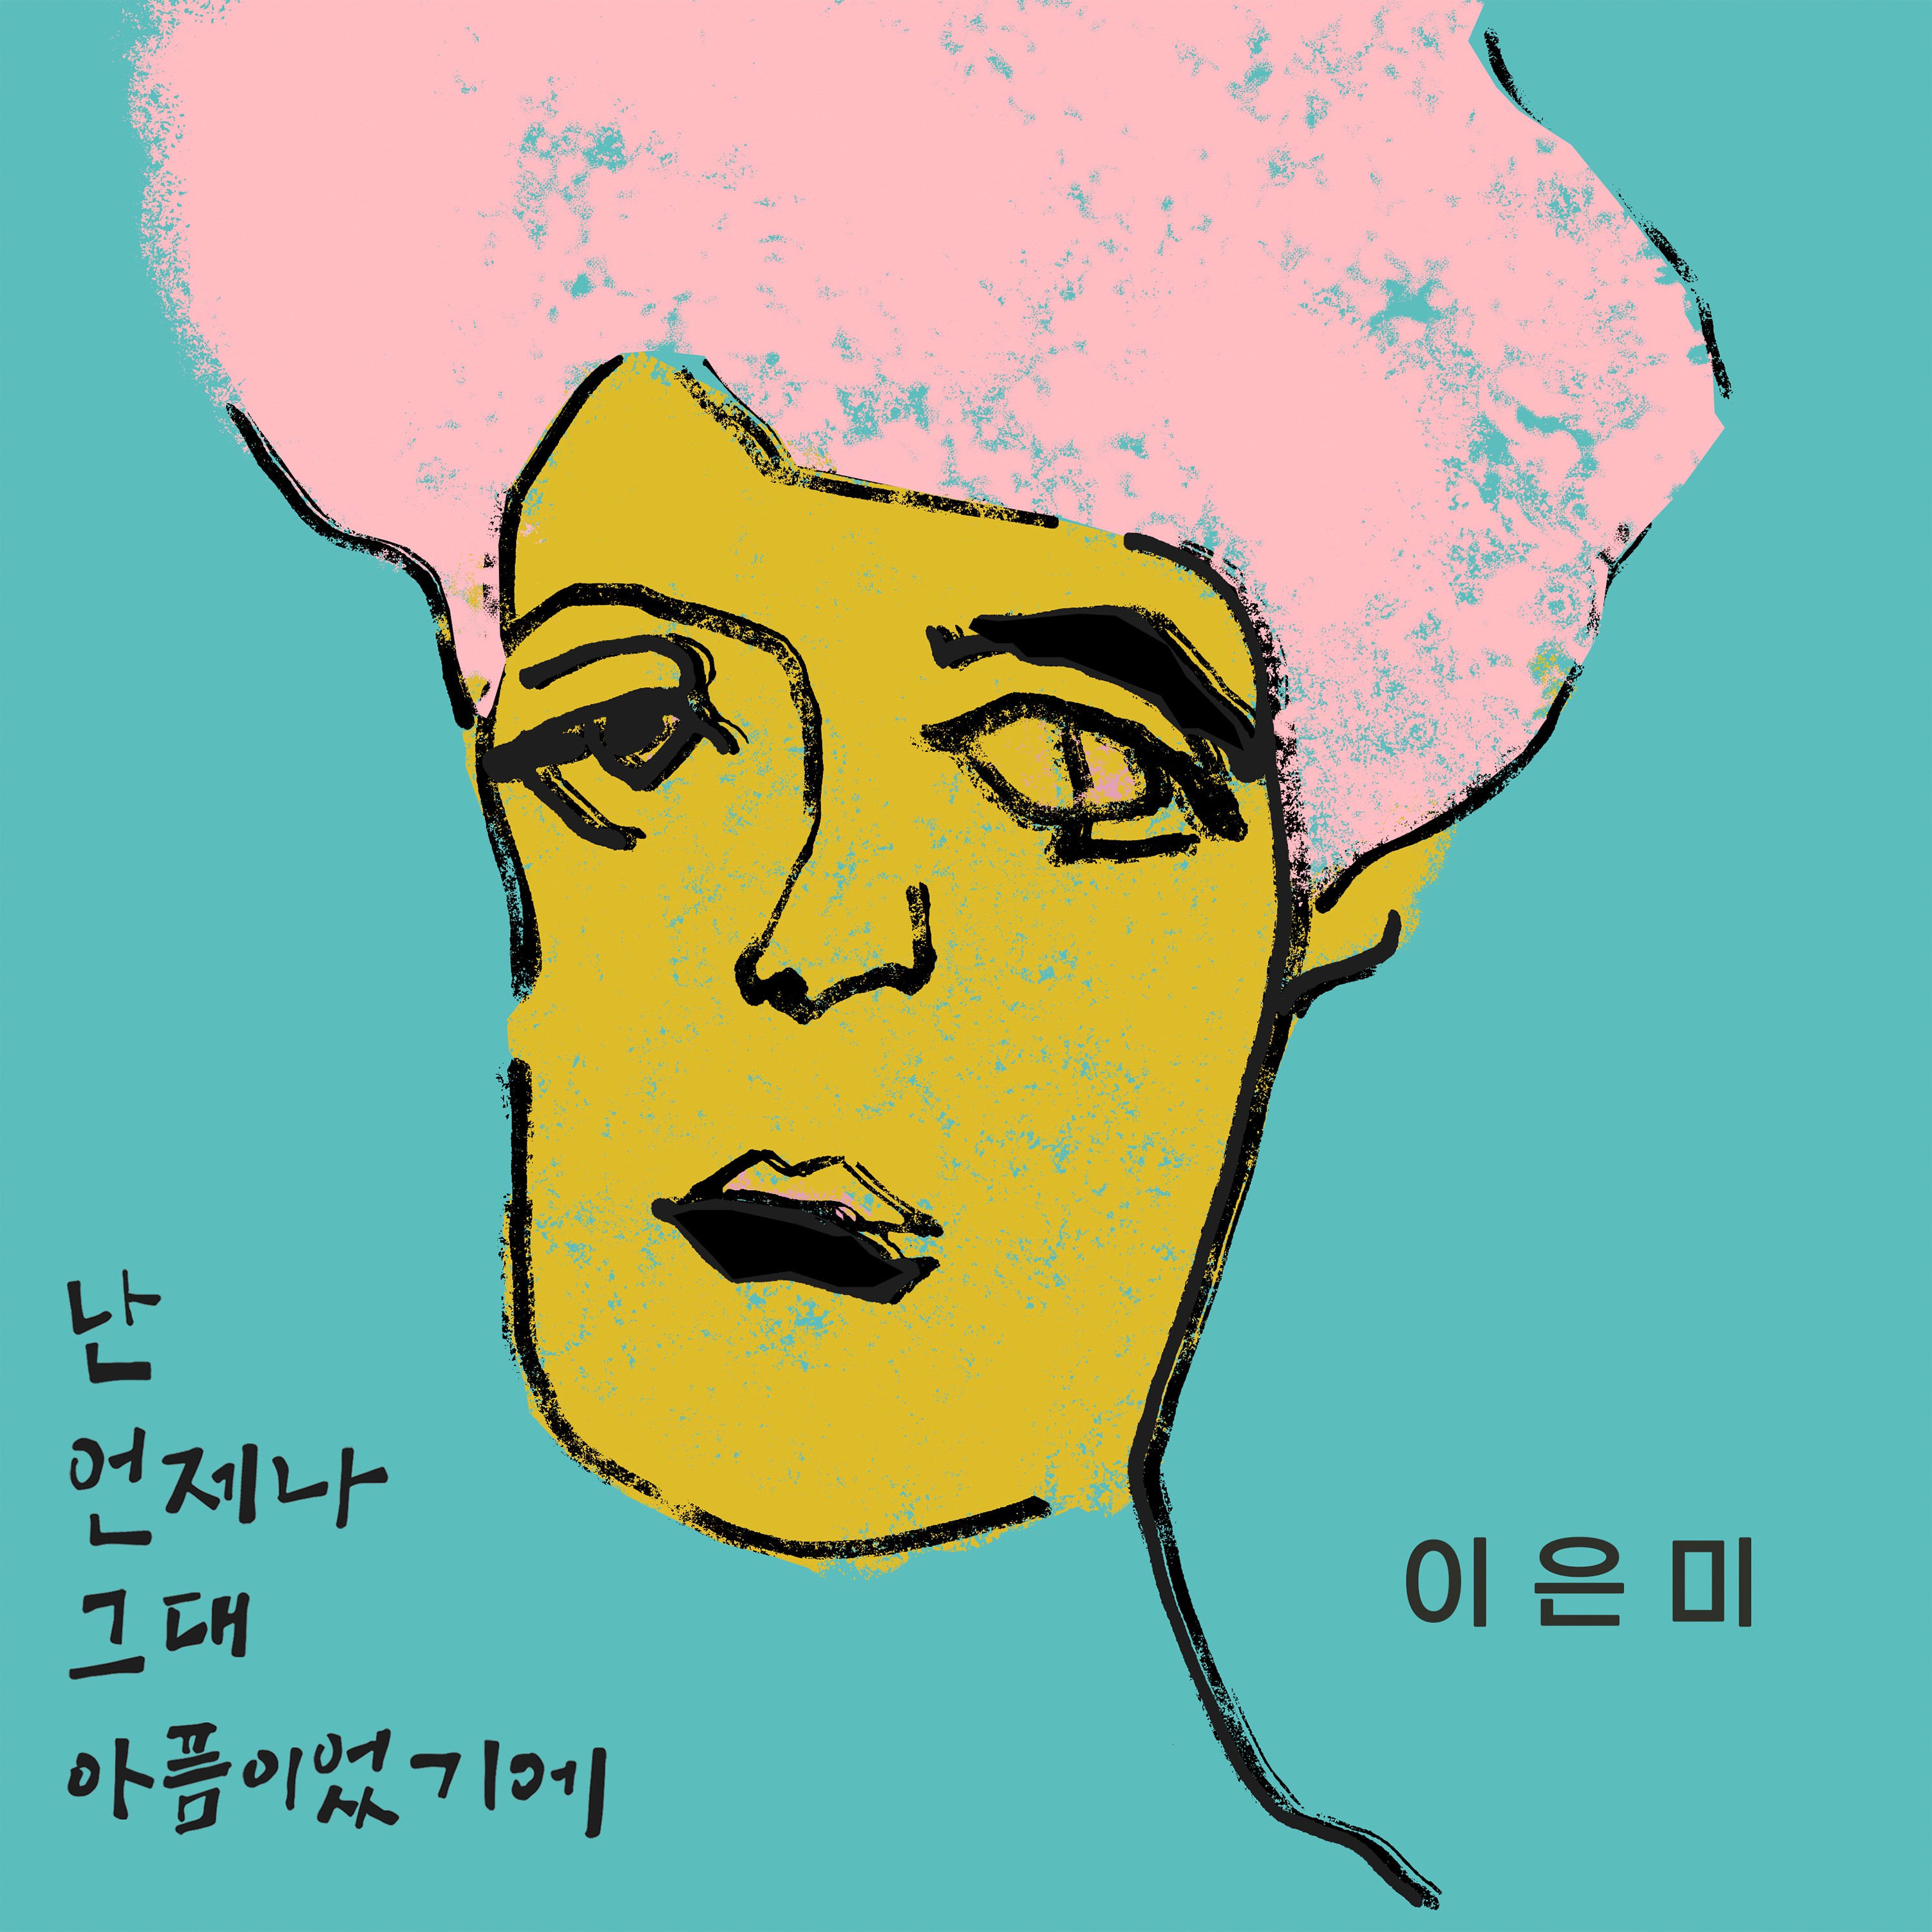 이은미, 17일 디지털 싱글 '난 언제나 그대 아픔이었기에' 발매